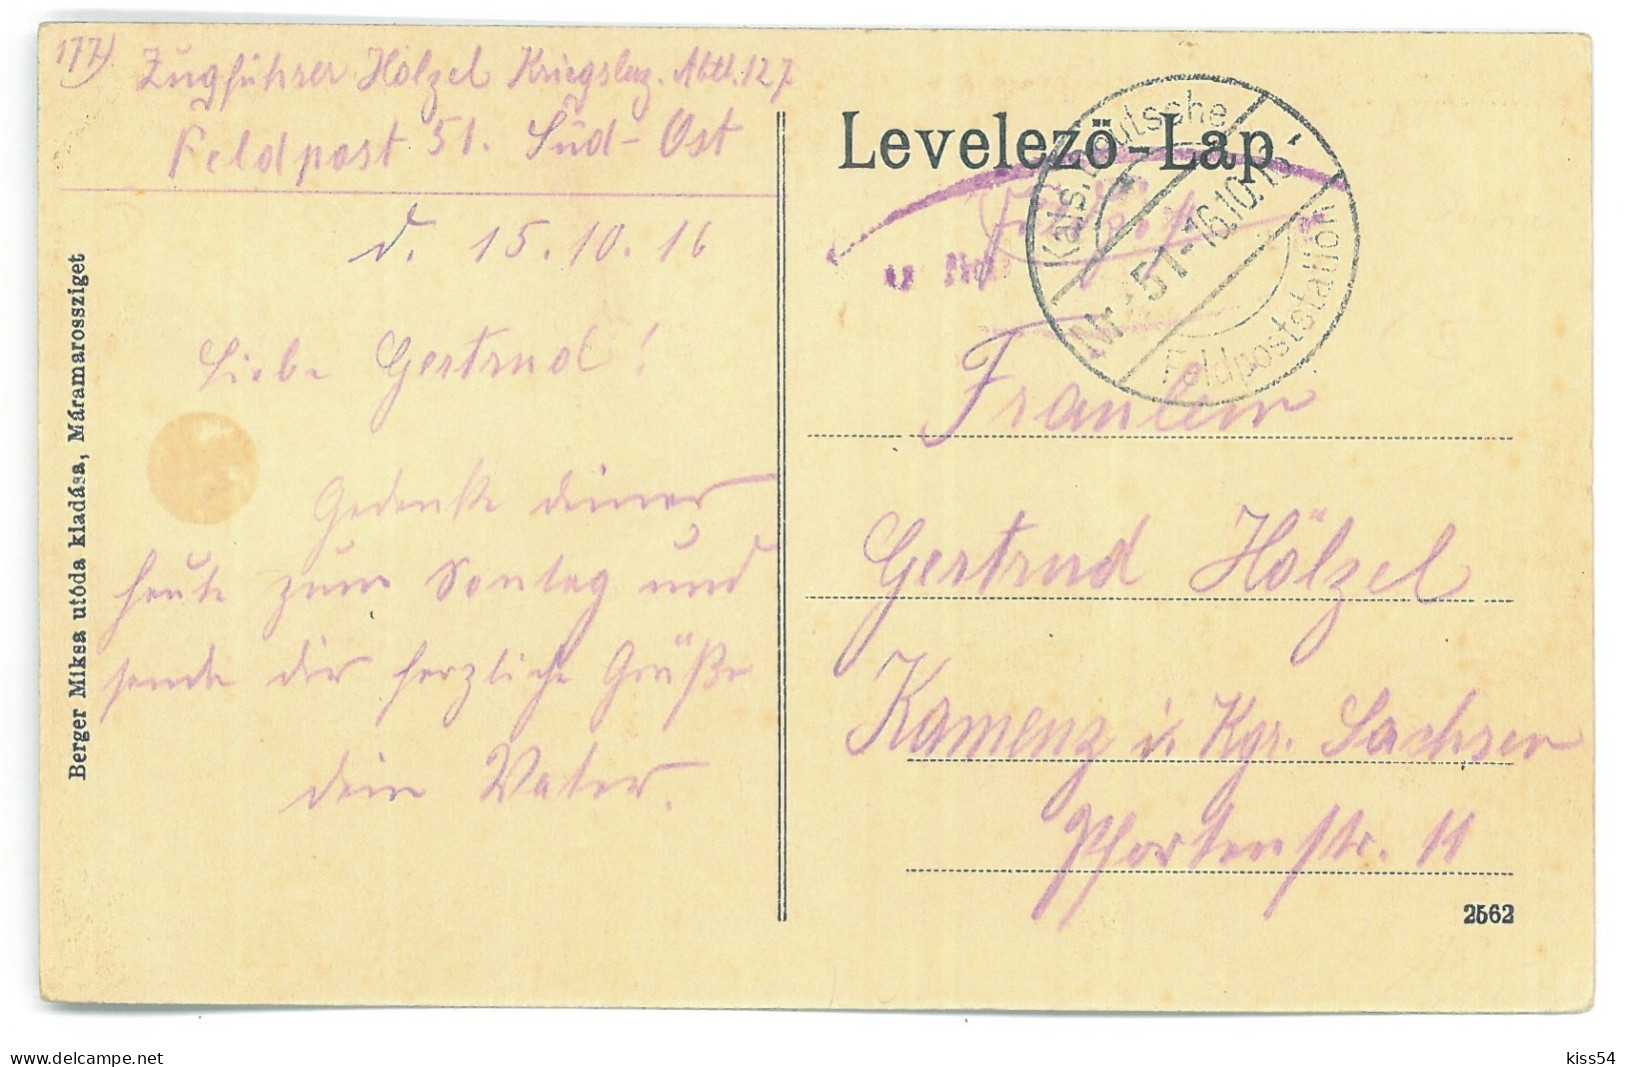 RO 09 - 25143 OCNA SUGATAG, Maramures, Market, Romania - Old Postcard, CENSOR - Used - 1916 - Roemenië